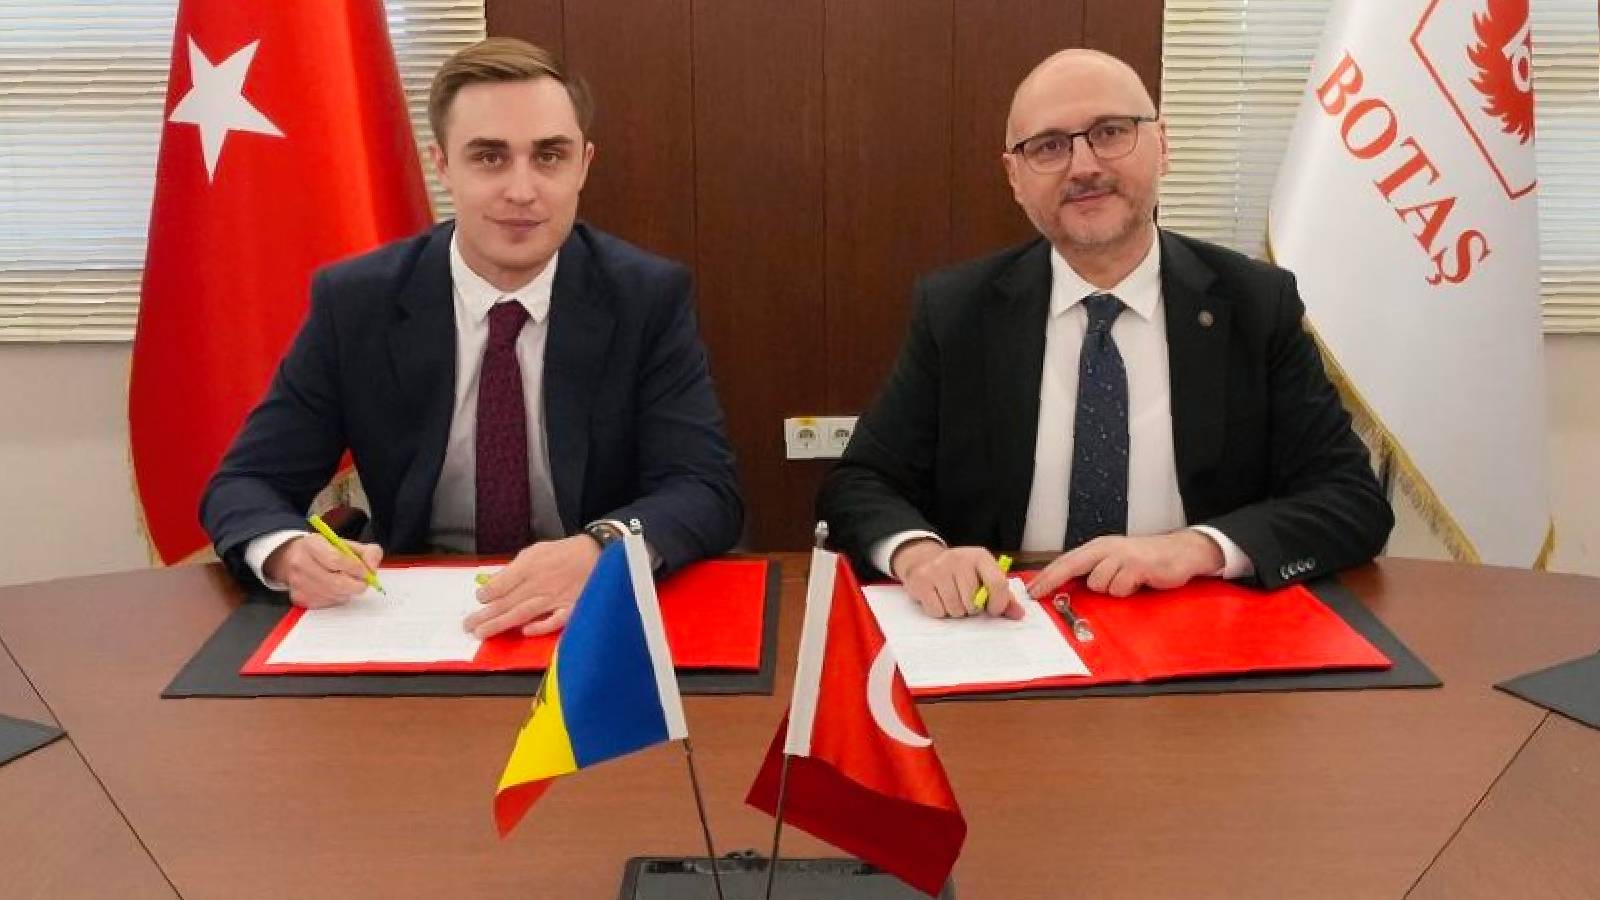 Türkiye, Moldova'ya doğal gaz ihraç edecek